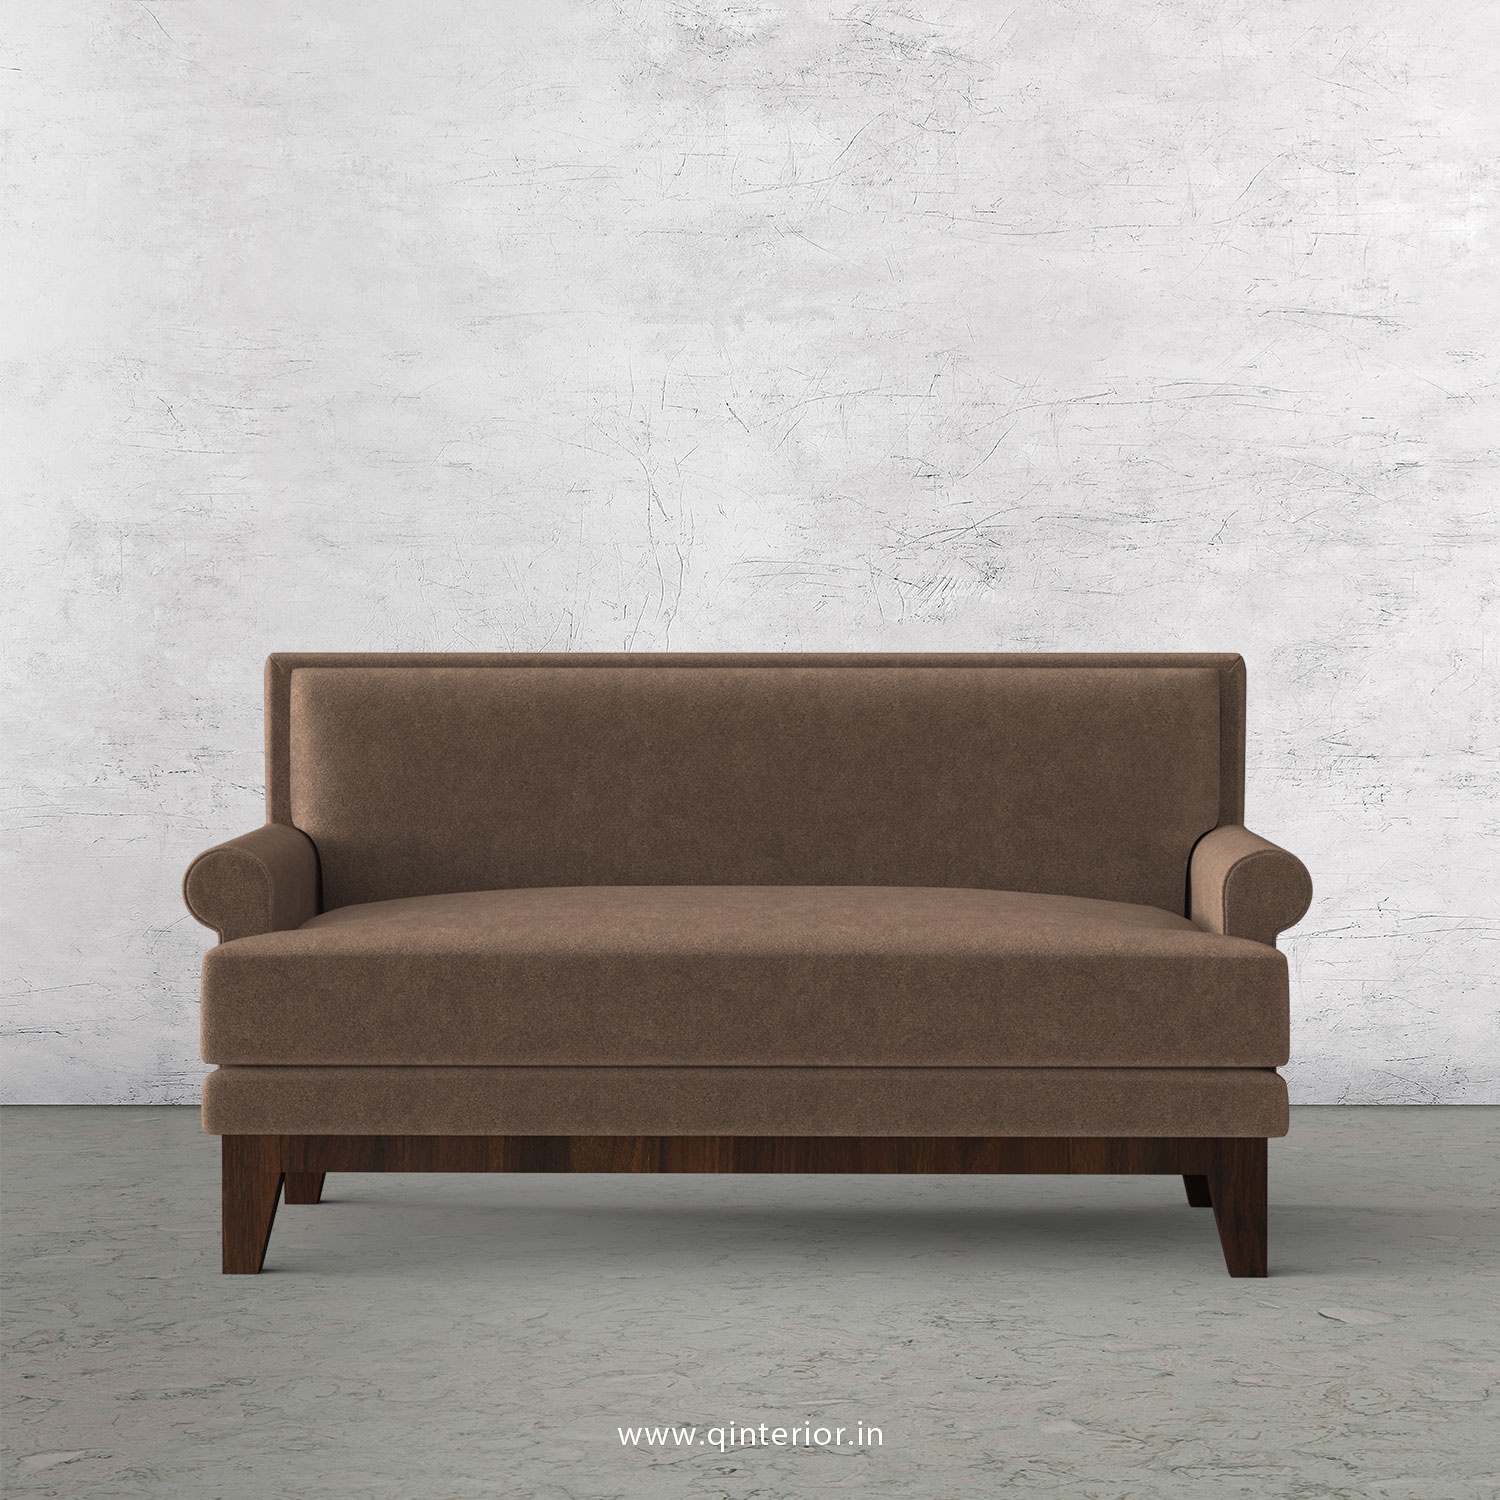 Aviana 2 Seater Sofa in Velvet Fabric - SFA001 VL02